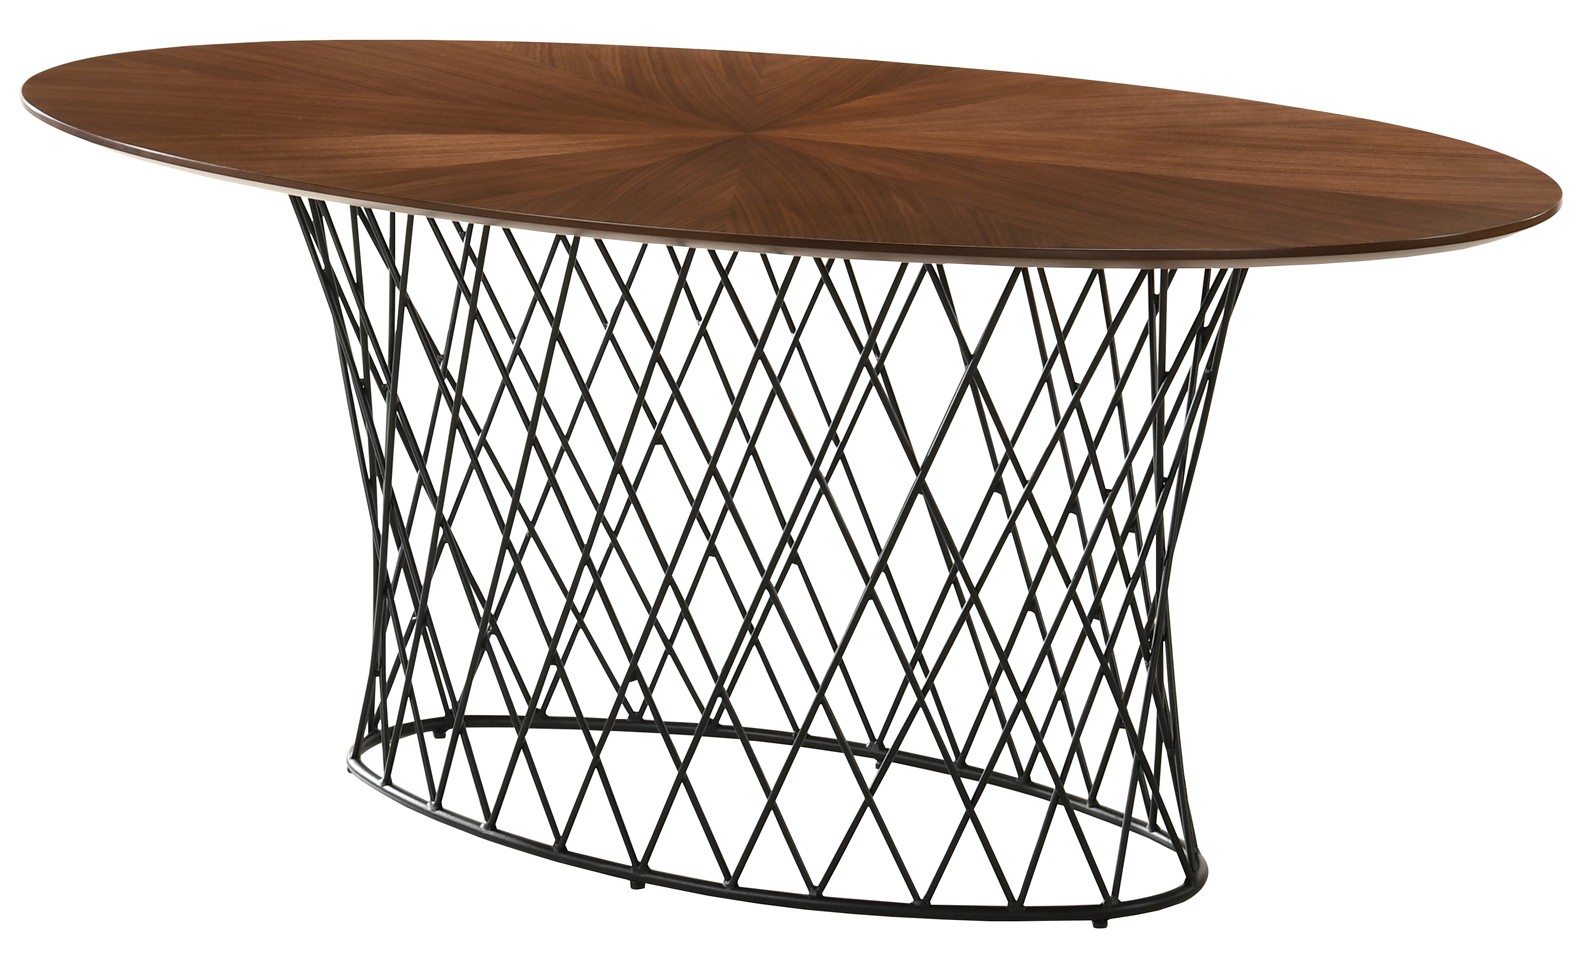 Estila Moderný oválny jedálenský stôl Nordica Nogal z orechovo hnedého dreva s čiernou kovovu podstavou 180cm